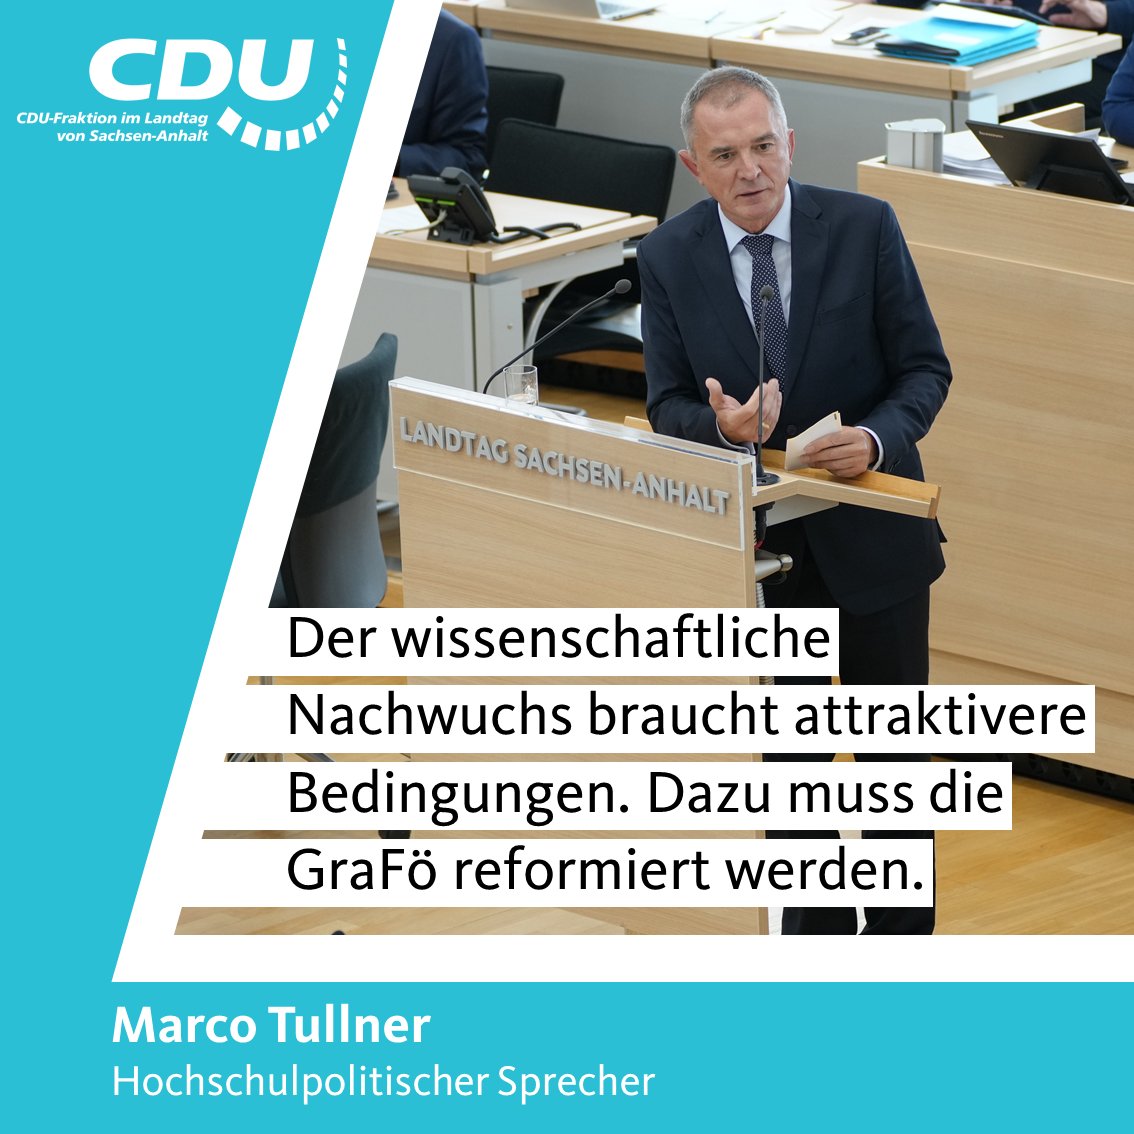 Im Landtag von Sachsen-Anhalt macht der hochschulpolitische Sprecher, @MarcoTullner deutlich: „Der wissenschaftliche Nachwuchs braucht attraktivere Bedingungen. Dazu muss die #Graduiertenförderung reformiert werden.“